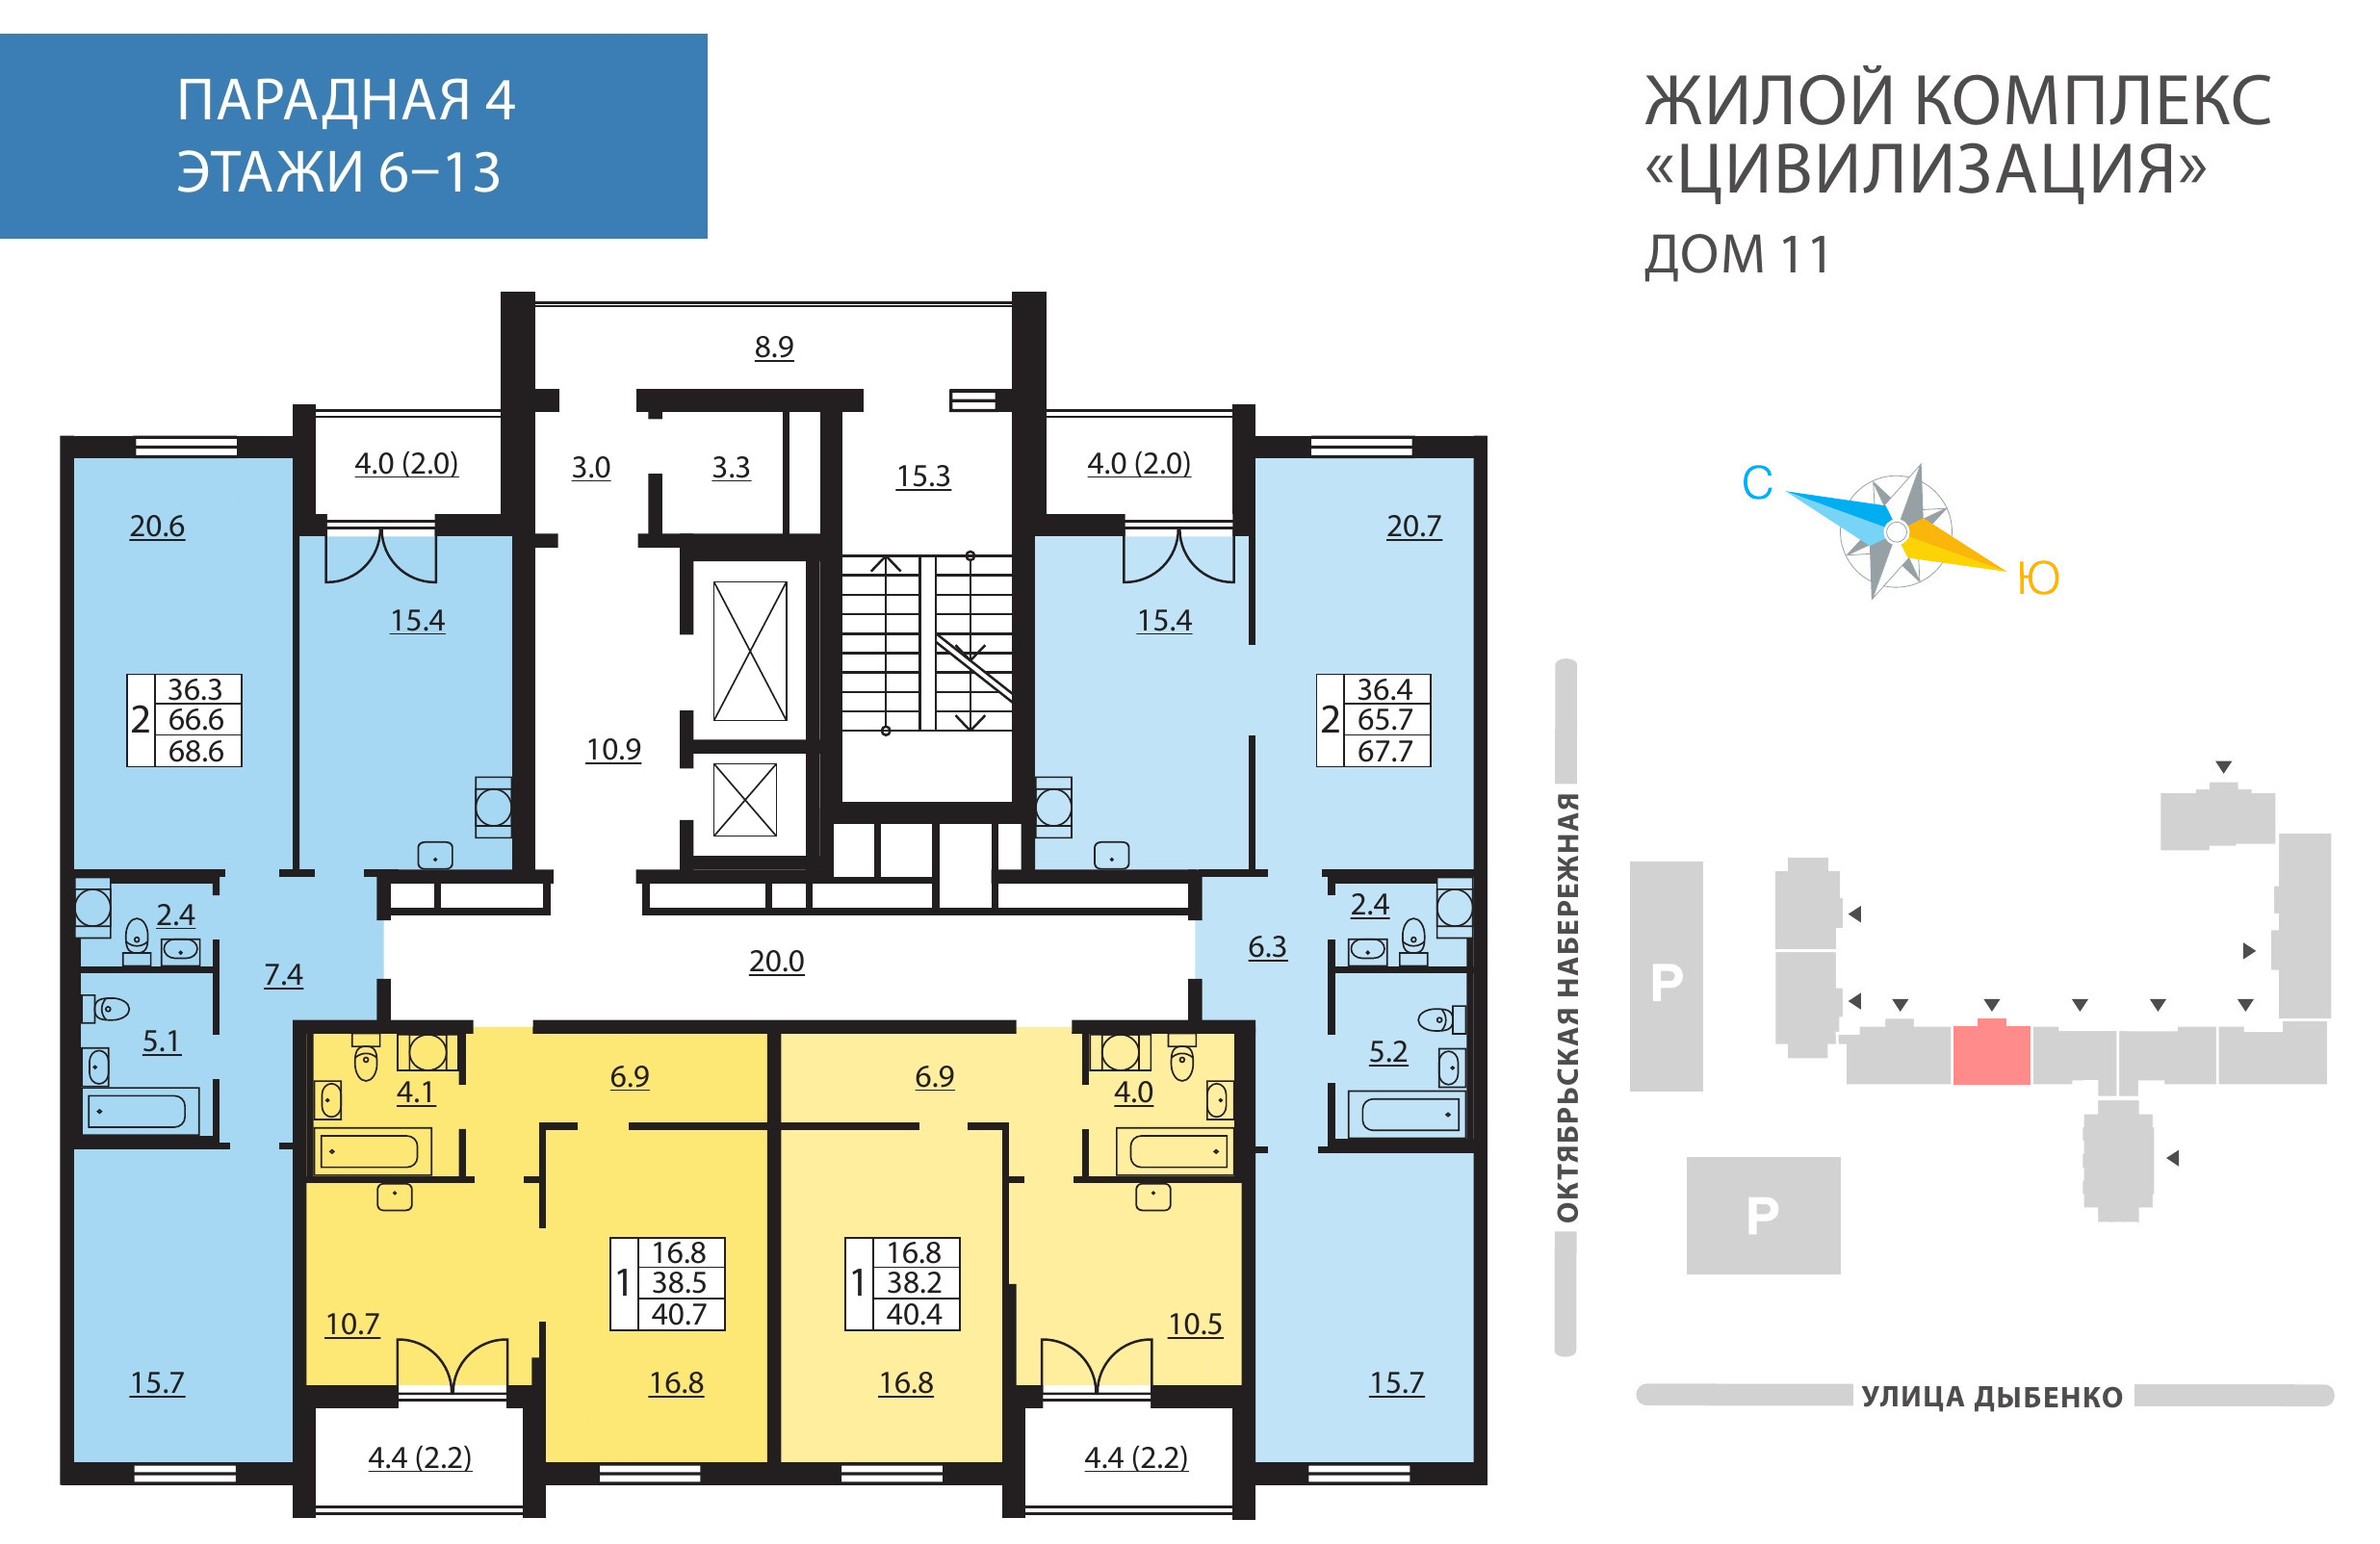 3-комнатная (Евро) квартира, 67.6 м² в ЖК "Цивилизация на Неве" - планировка этажа